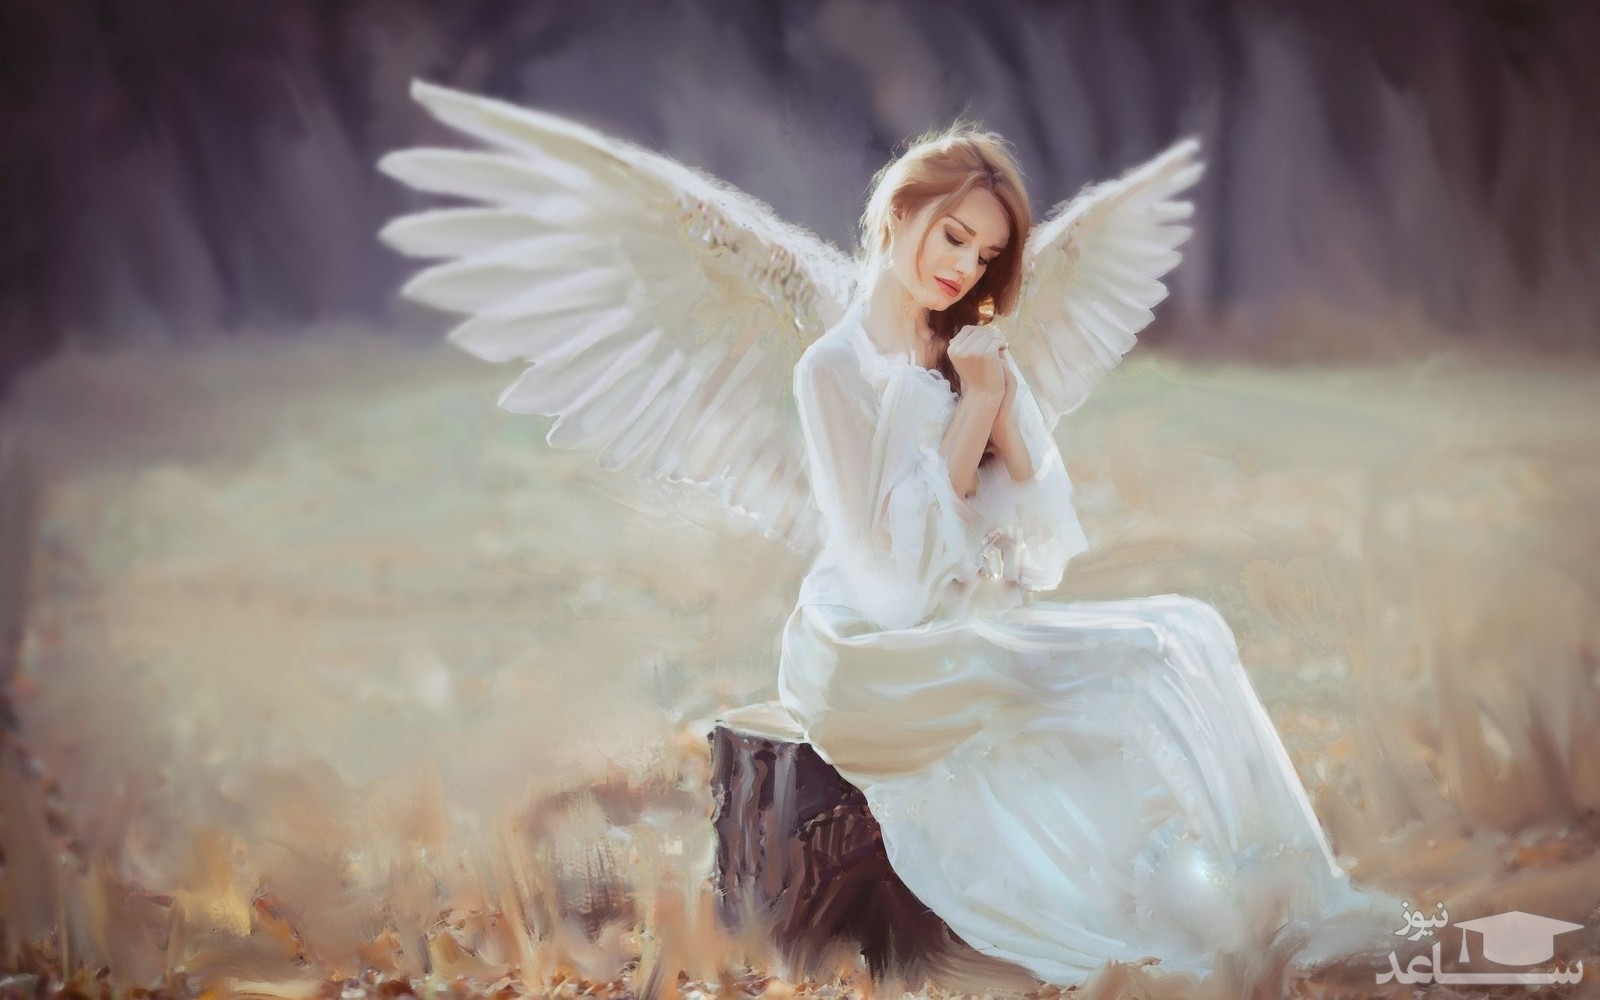 دیدن فرشته در لباس زنانه در خواب چه تعبیری دارد؟  / تعبیر خواب پری